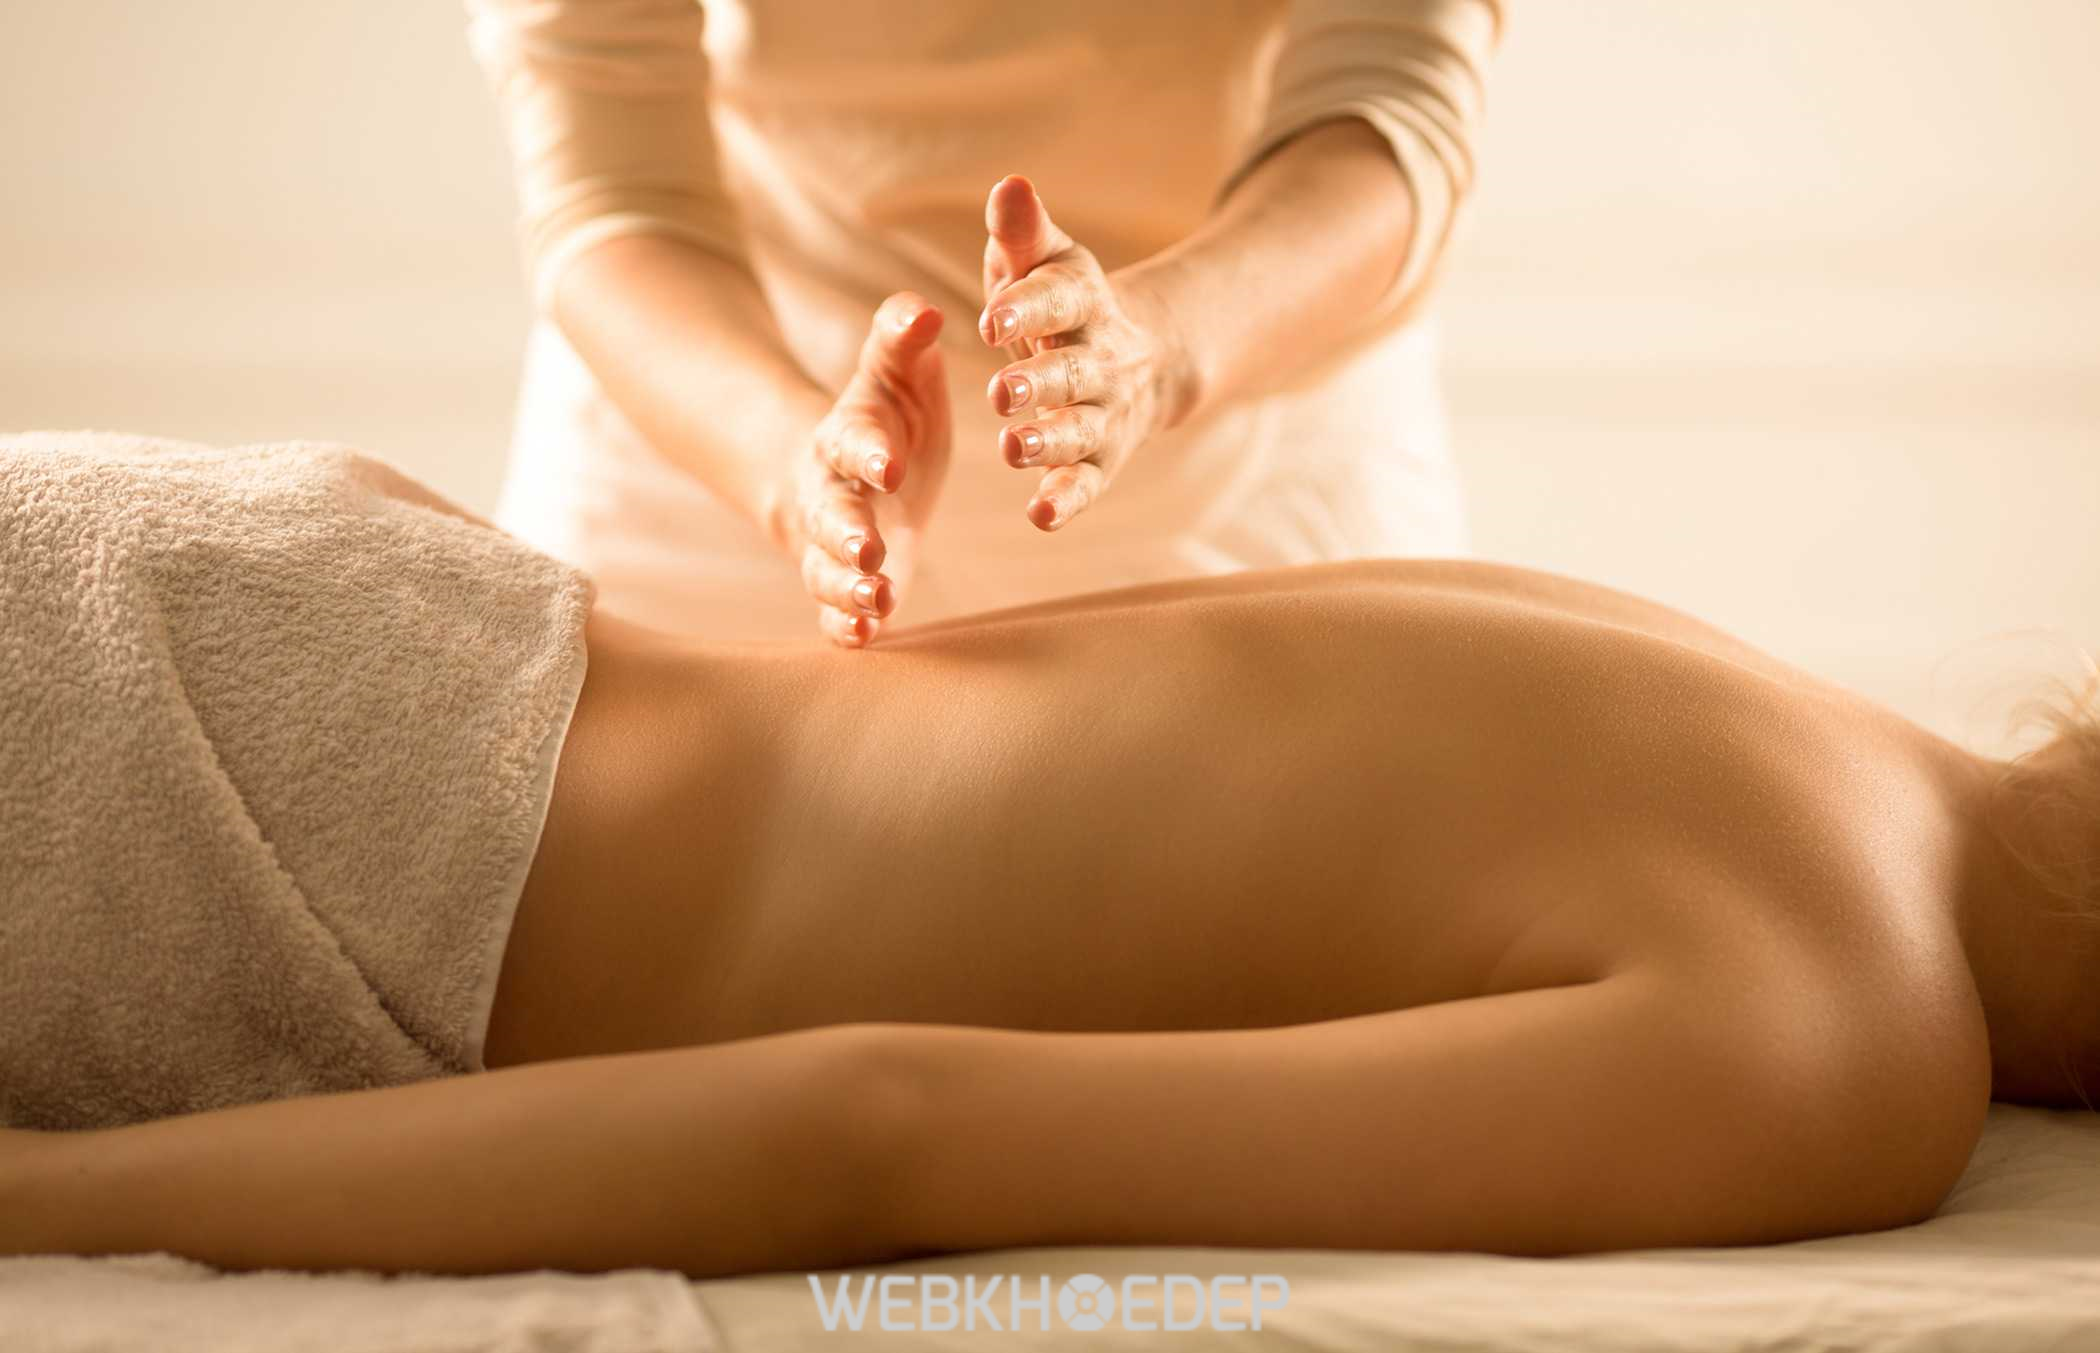 Massage trị liệu toàn thân tại Hà Nội hiện nay khá đa dạng về địa điểm, hình thức và giá cả